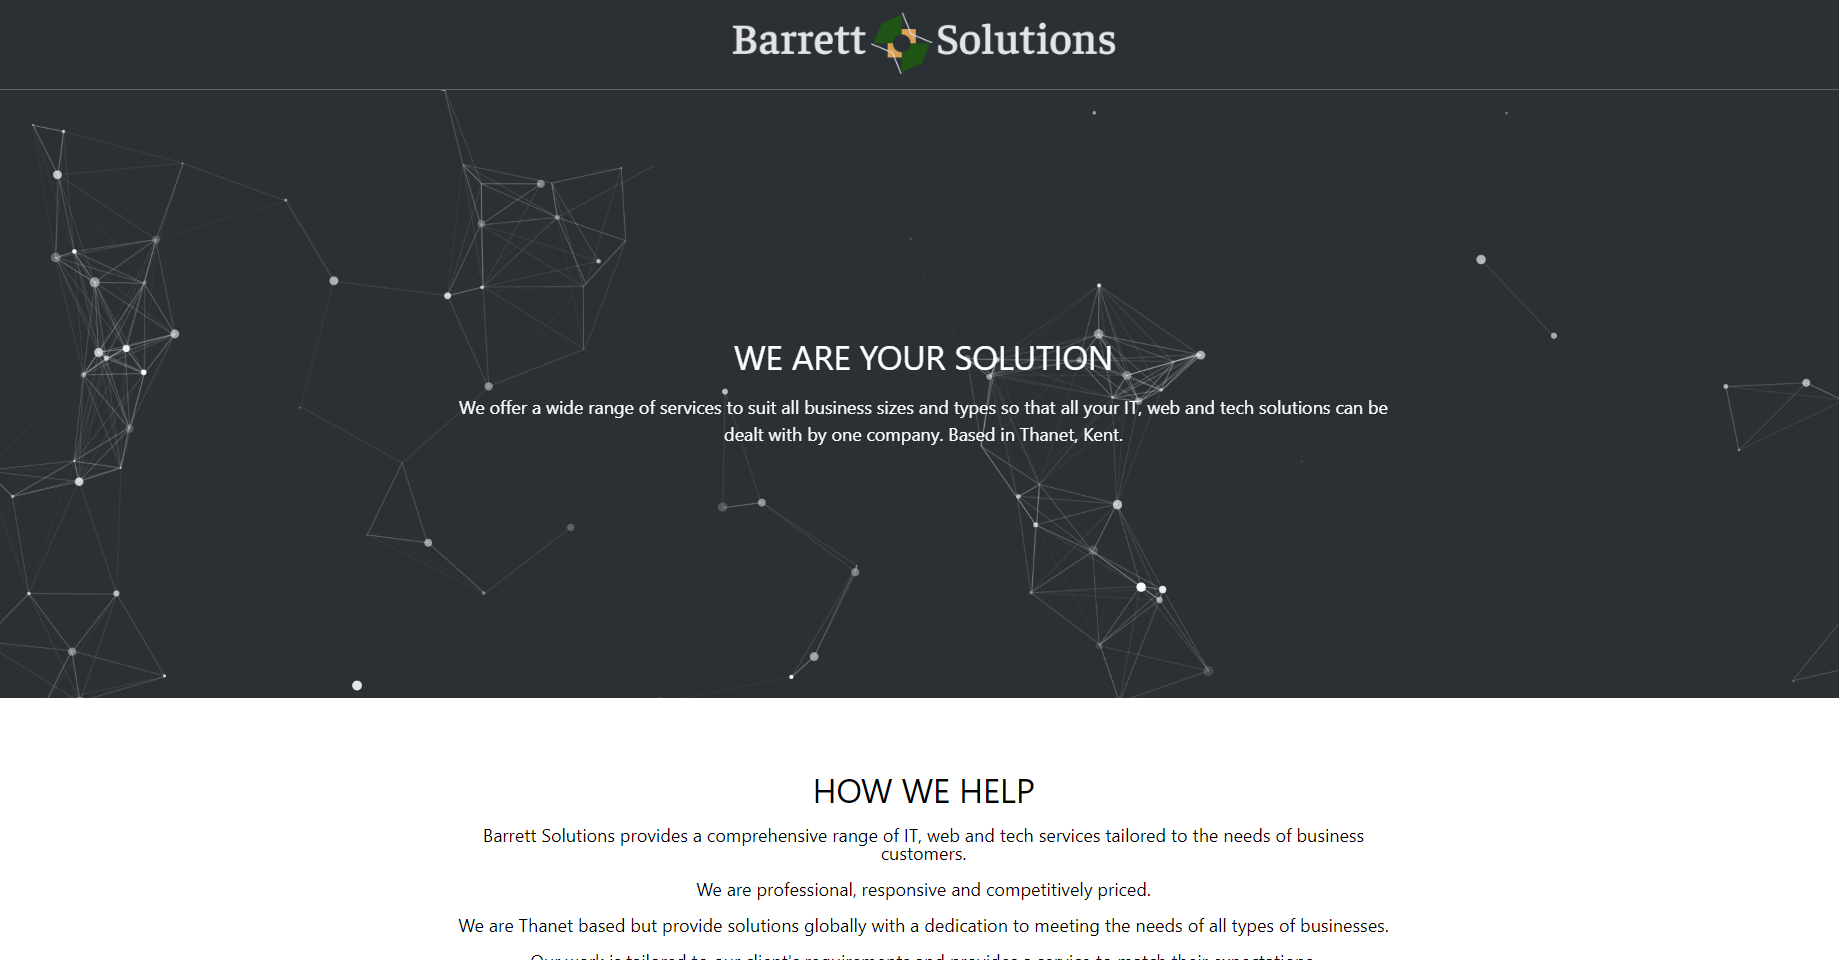 (c) Barrettsolutions.co.uk